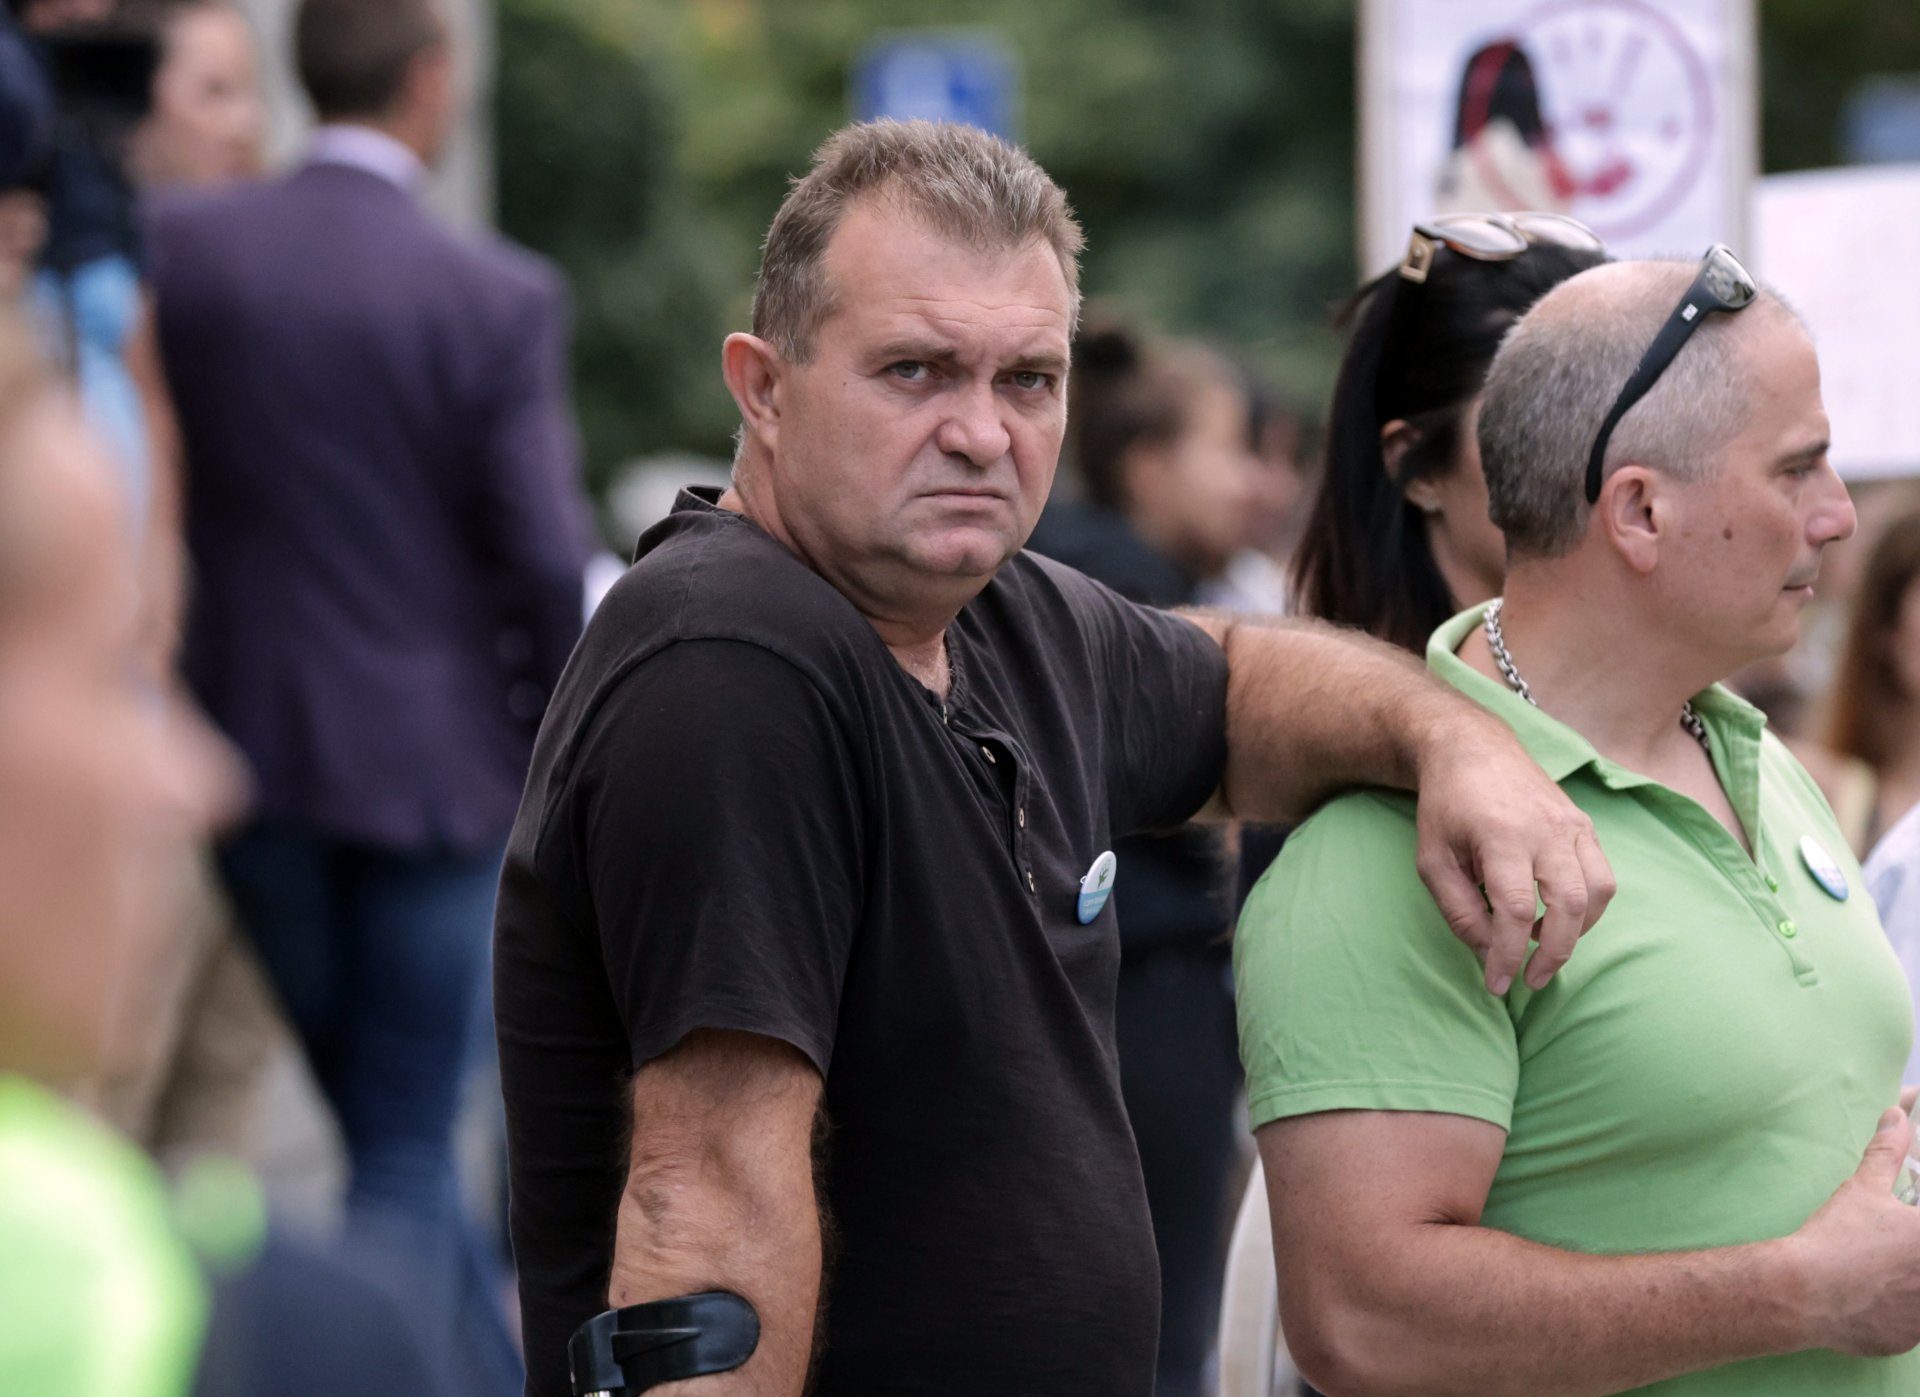 Георги Георгиев от "Боец" протестира пред Съдебната палата в столицата